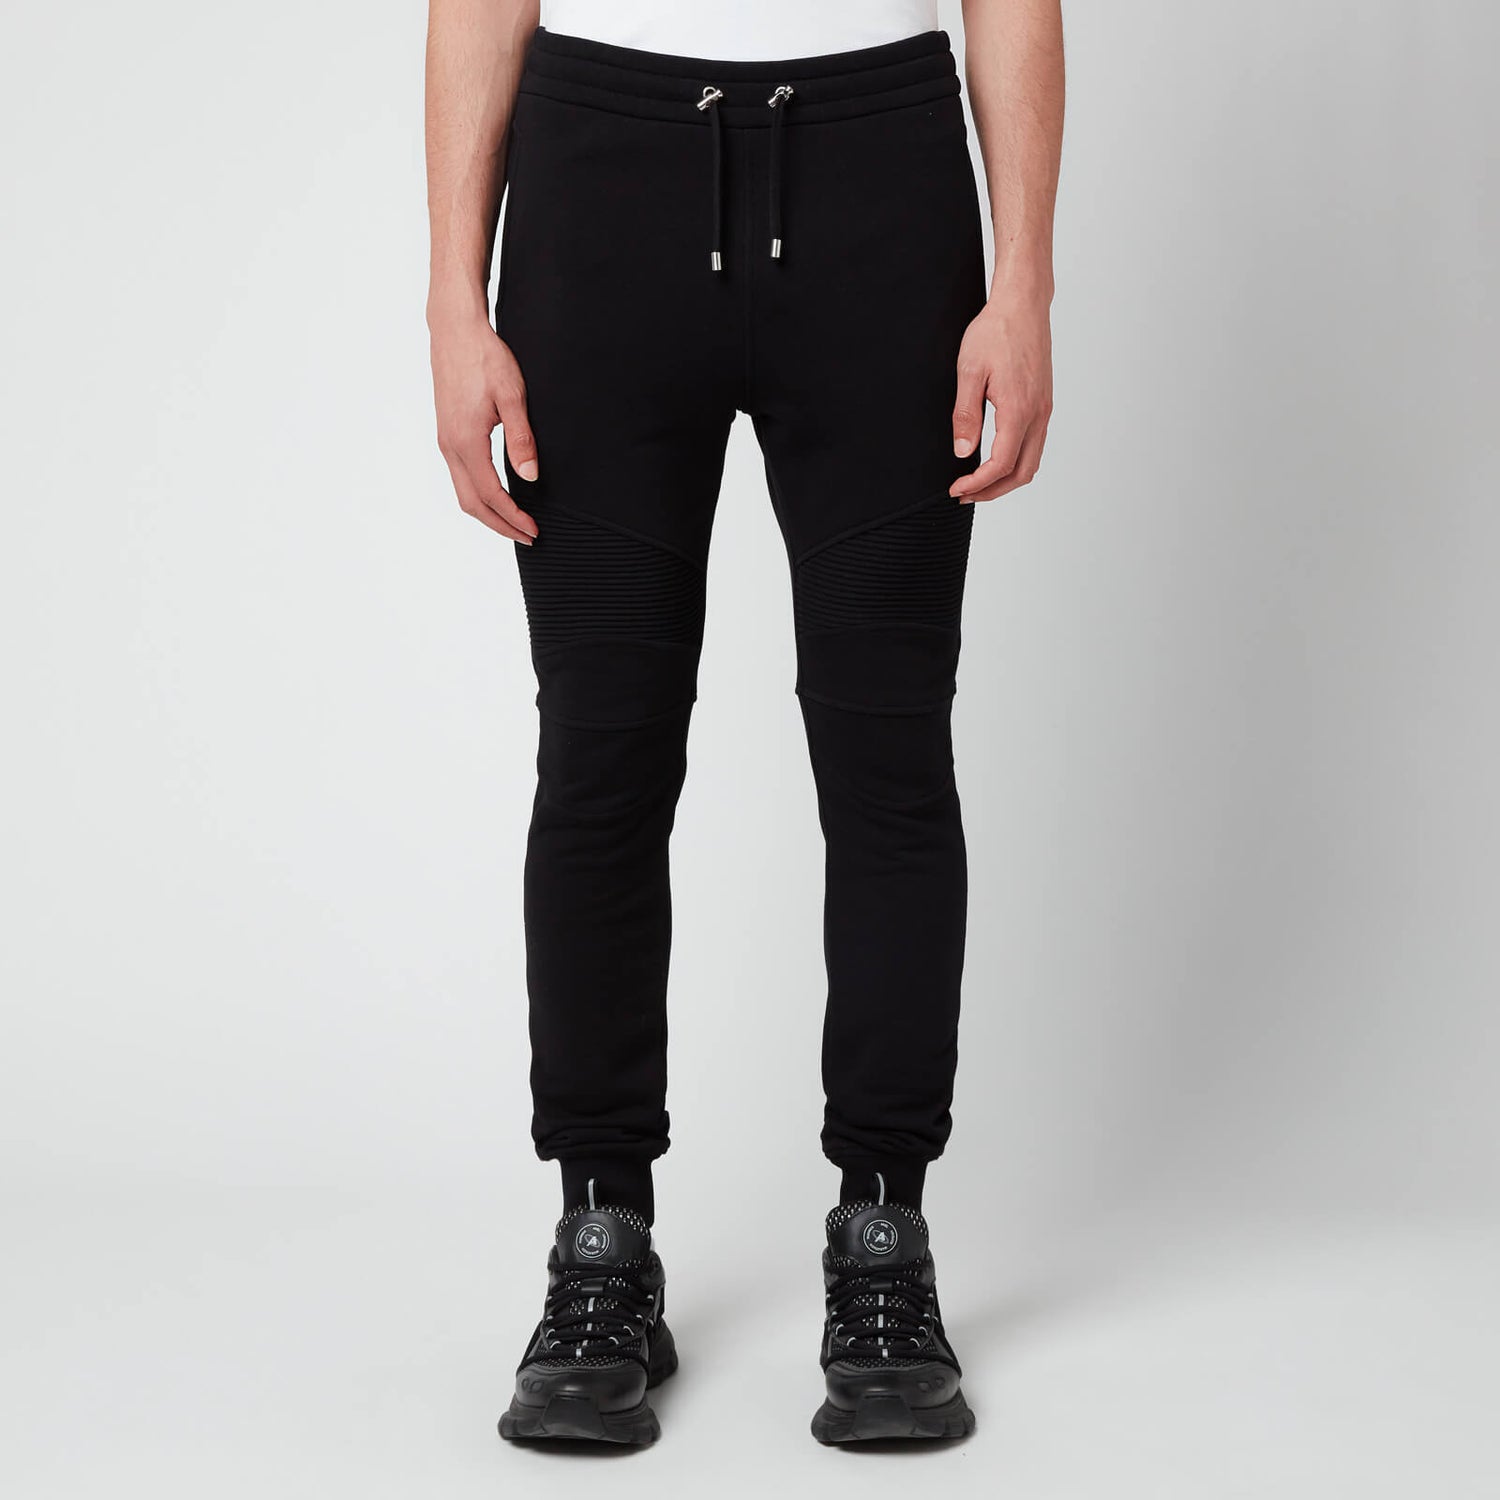 Balmain Men's Printed Ribbed Sweatpants - Black/White